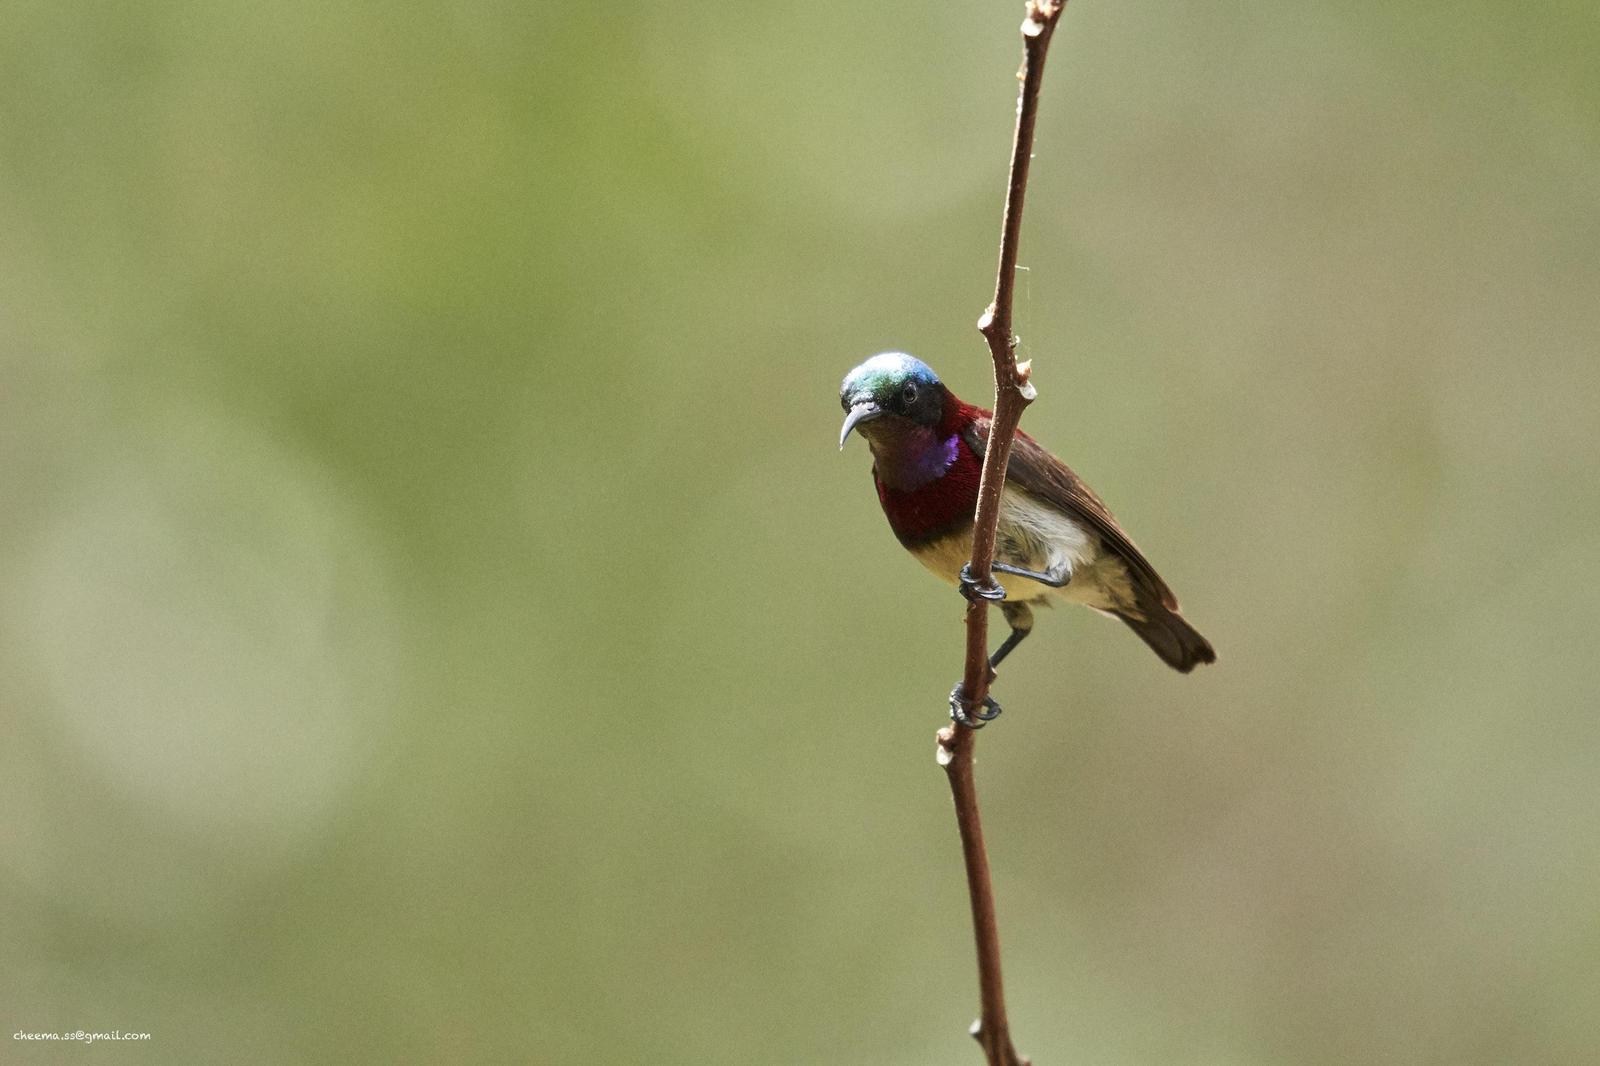 Crimson-backed Sunbird Photo by Simepreet Cheema